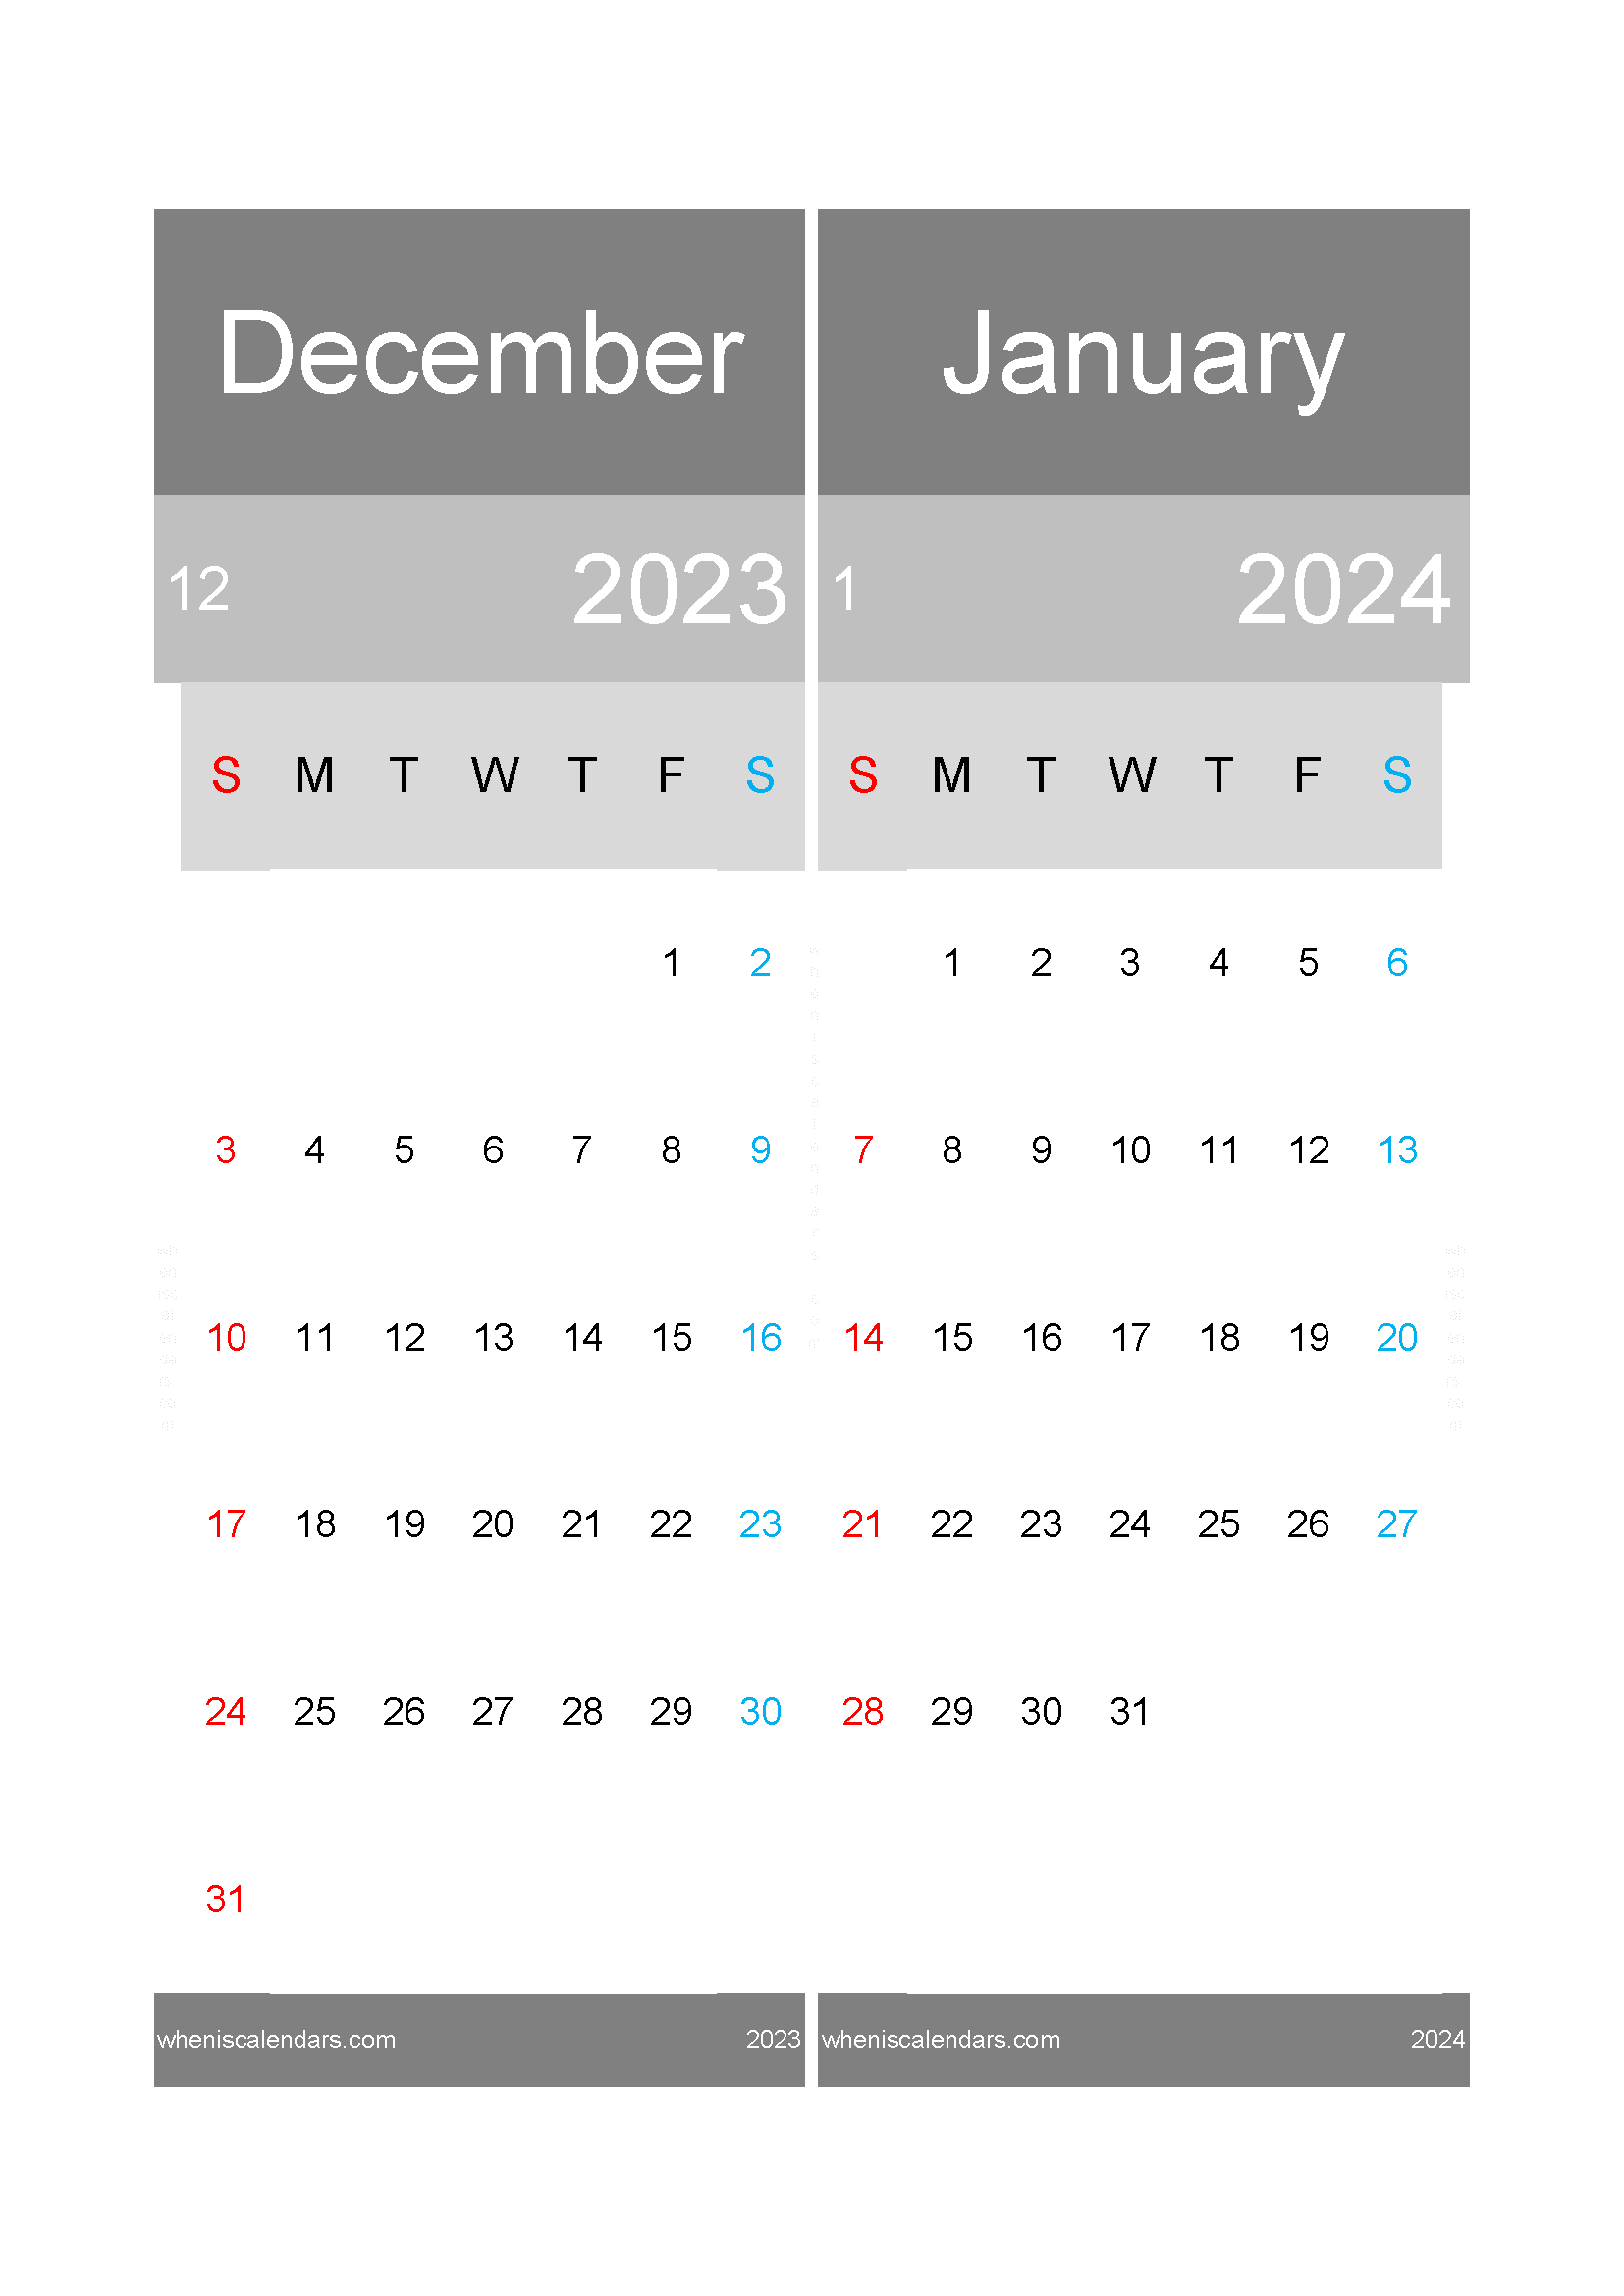 Dec 2023 and January 2024 calendar DJ232020